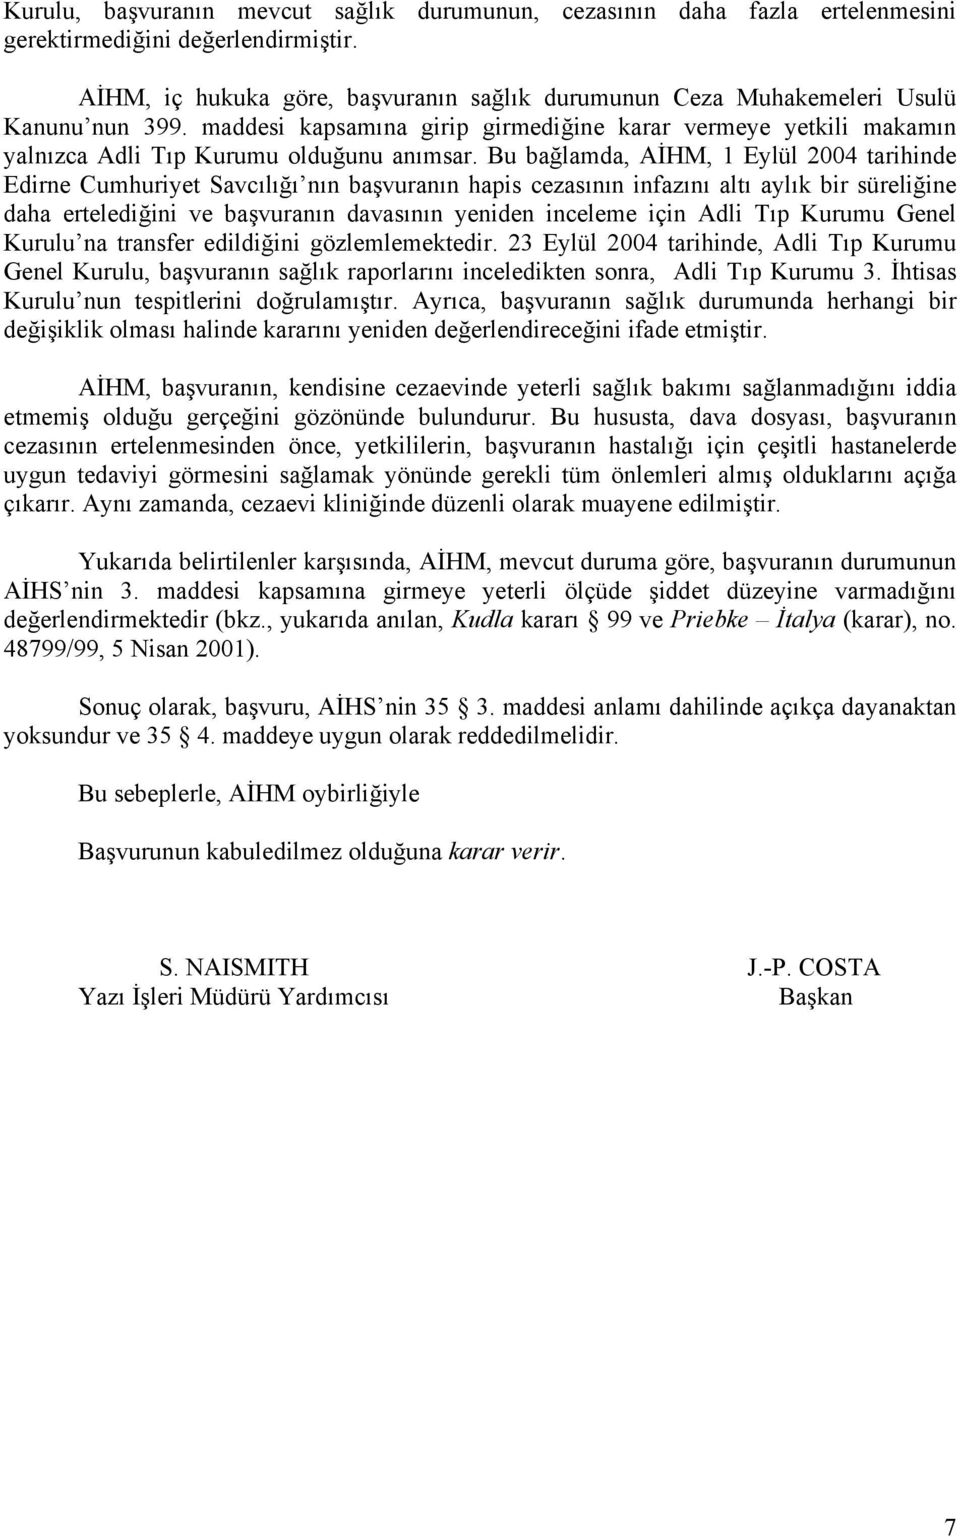 Bu bağlamda, AİHM, 1 Eylül 2004 tarihinde Edirne Cumhuriyet Savcılığı nın başvuranın hapis cezasının infazını altı aylık bir süreliğine daha ertelediğini ve başvuranın davasının yeniden inceleme için